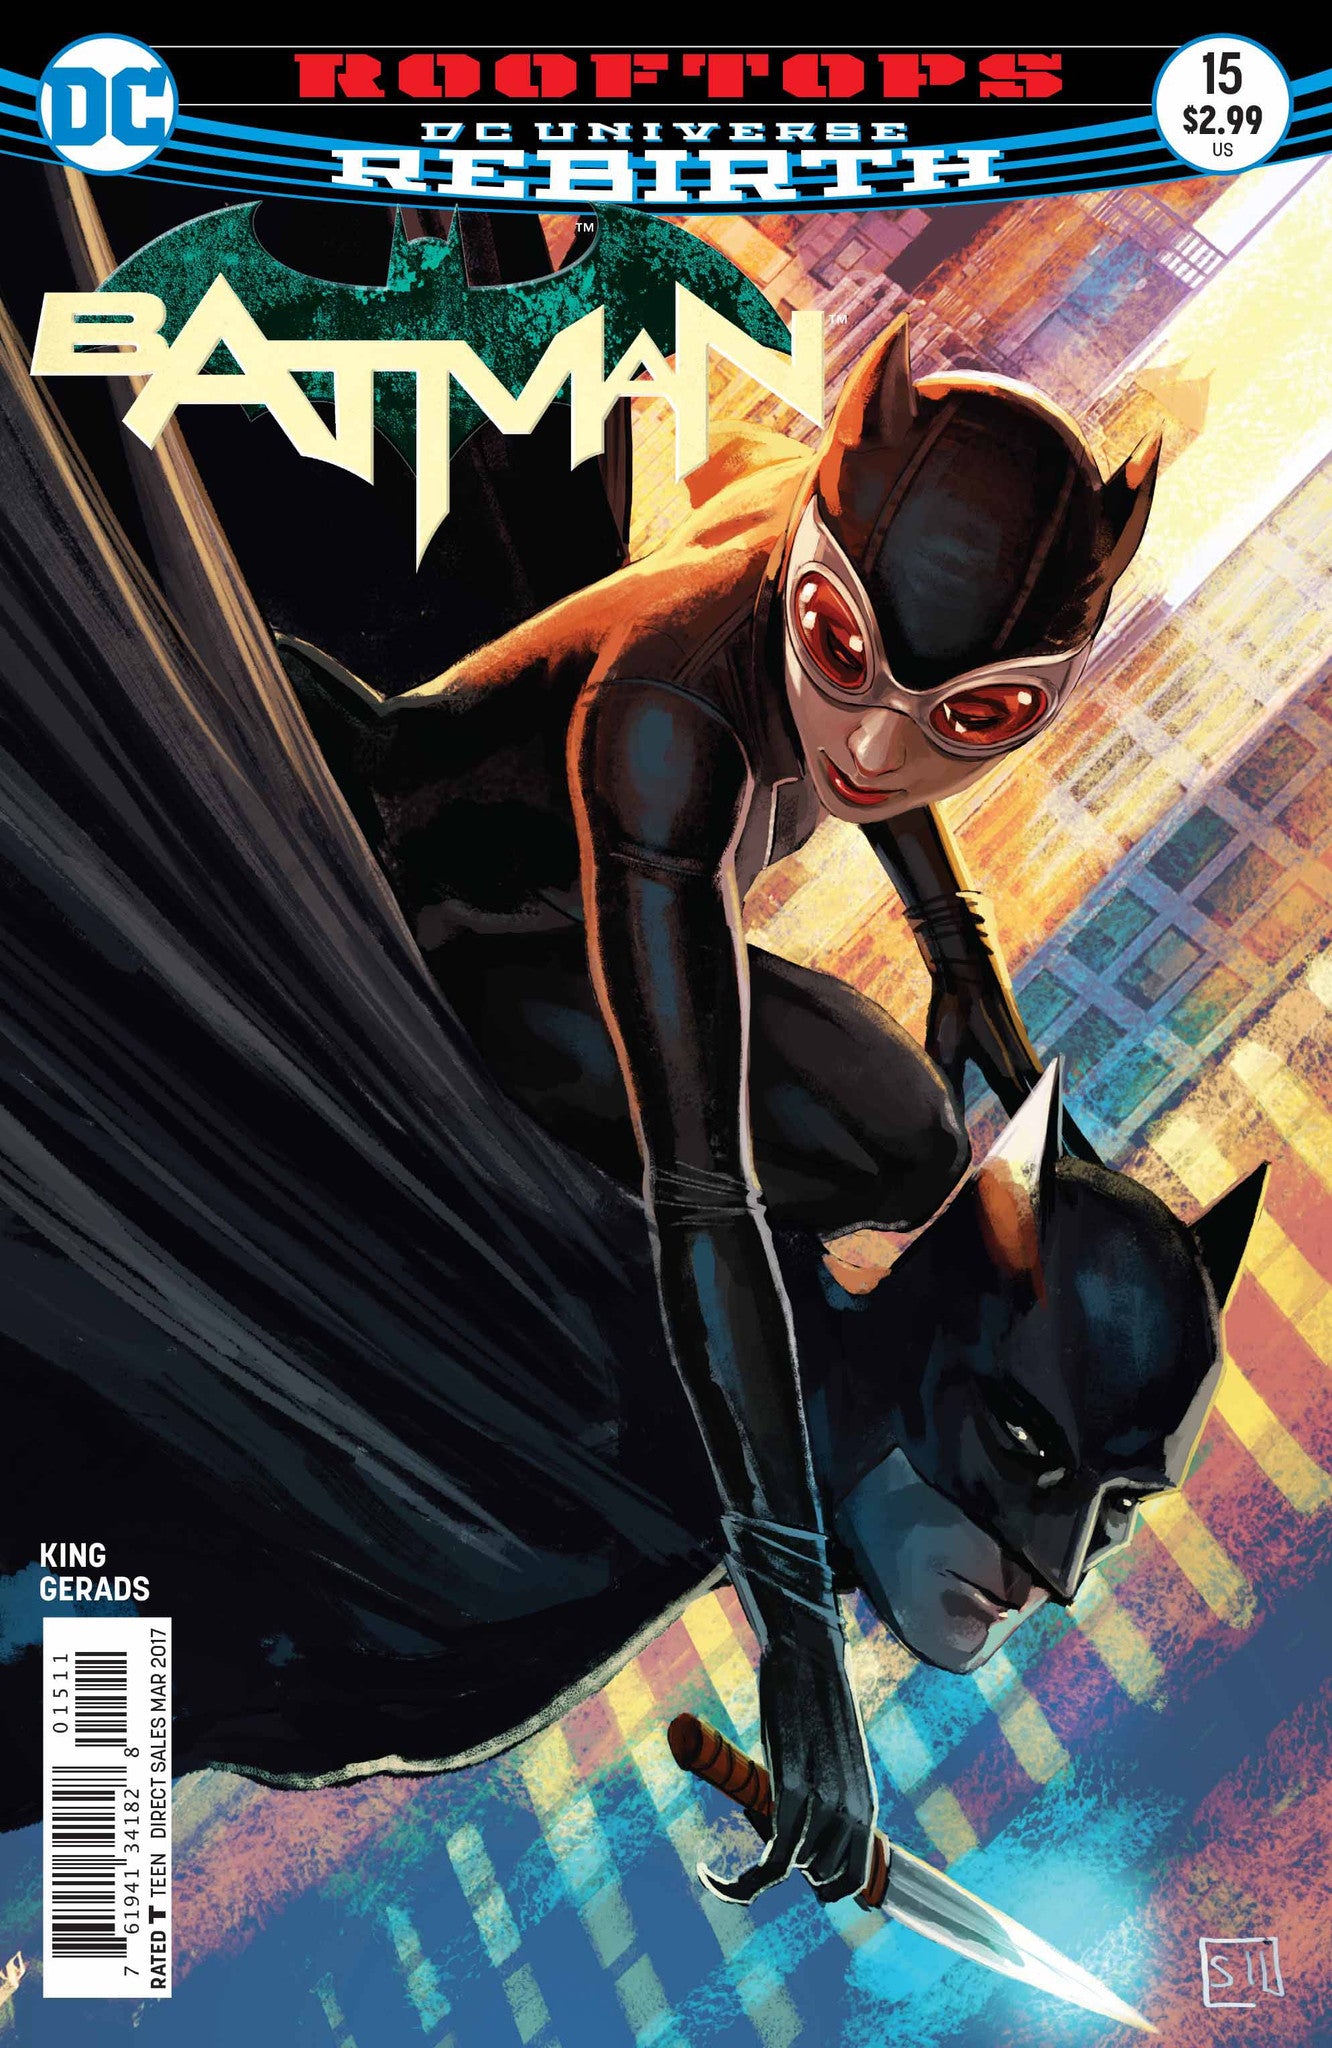 BATMAN #15 COVER